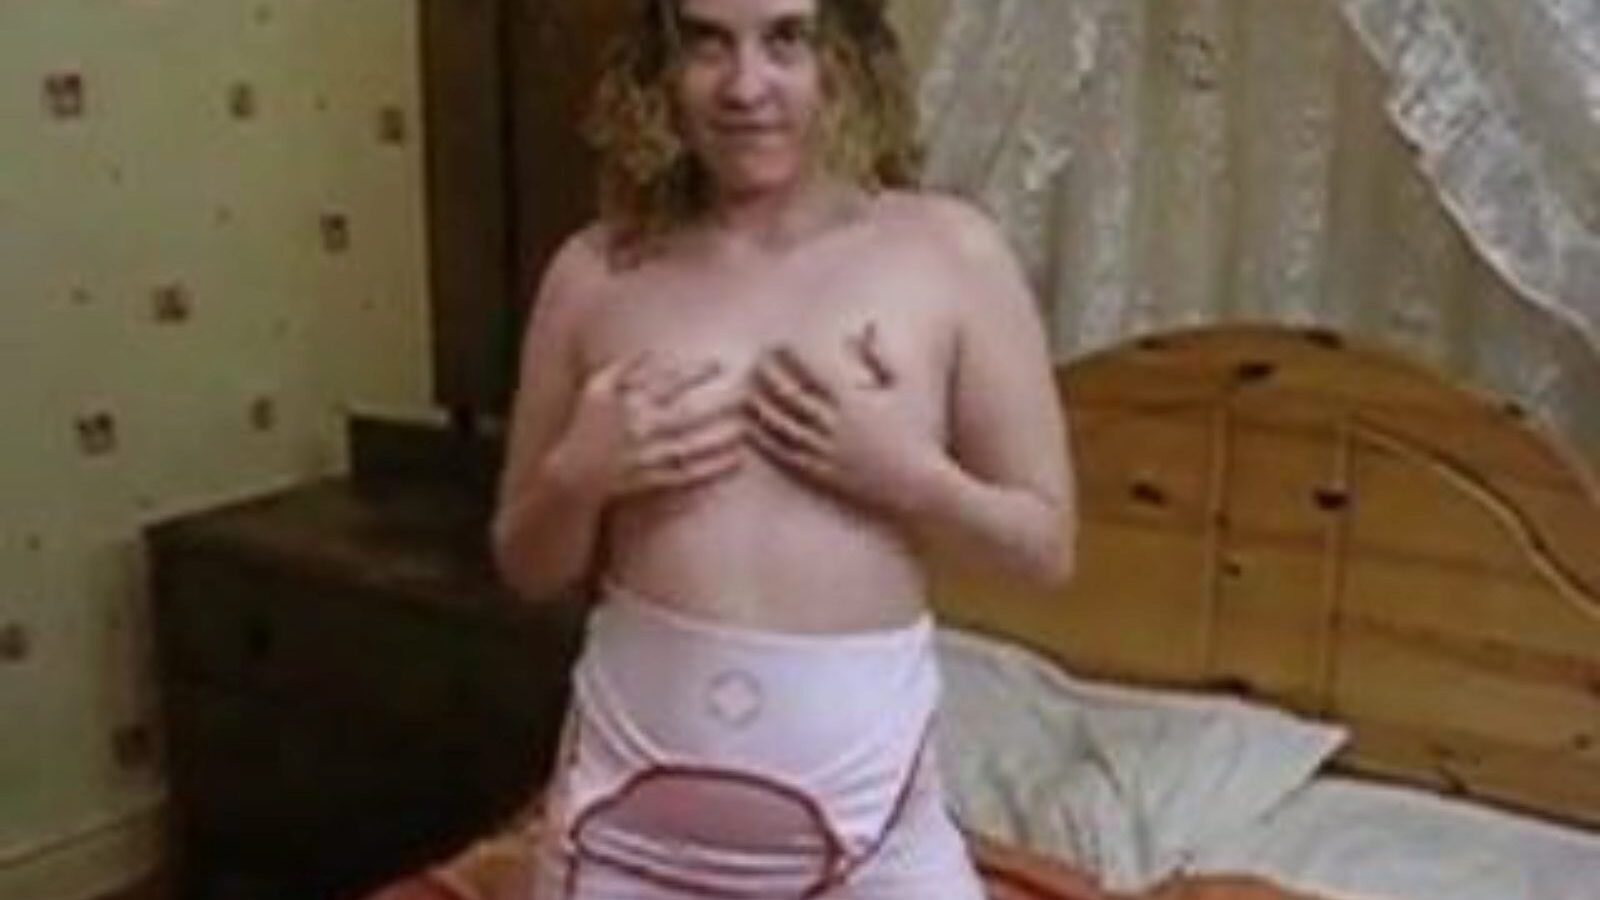 enfermera hace una mamada y recibe follada, porno 1f: xhamster reloj enfermera da una mamada y recibe un episodio de follada en xhamster, la página web gigante del tubo de hacer el amor con toneladas de videos británicos gratuitos de mamadas gratis y videos de sexo porno